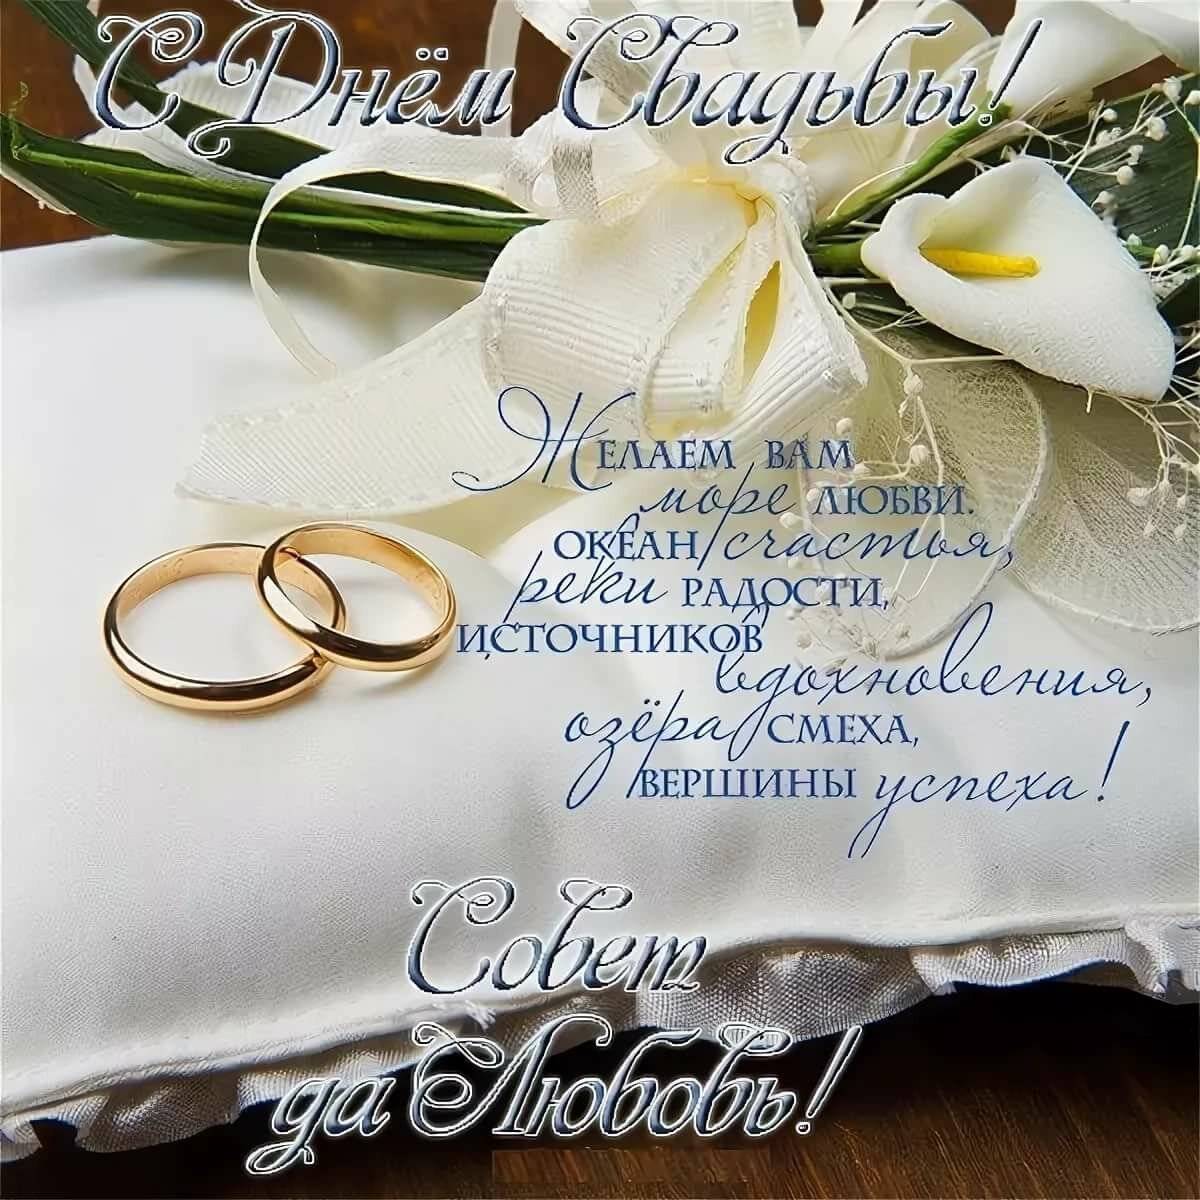 Поздравления на свадьбу от детей